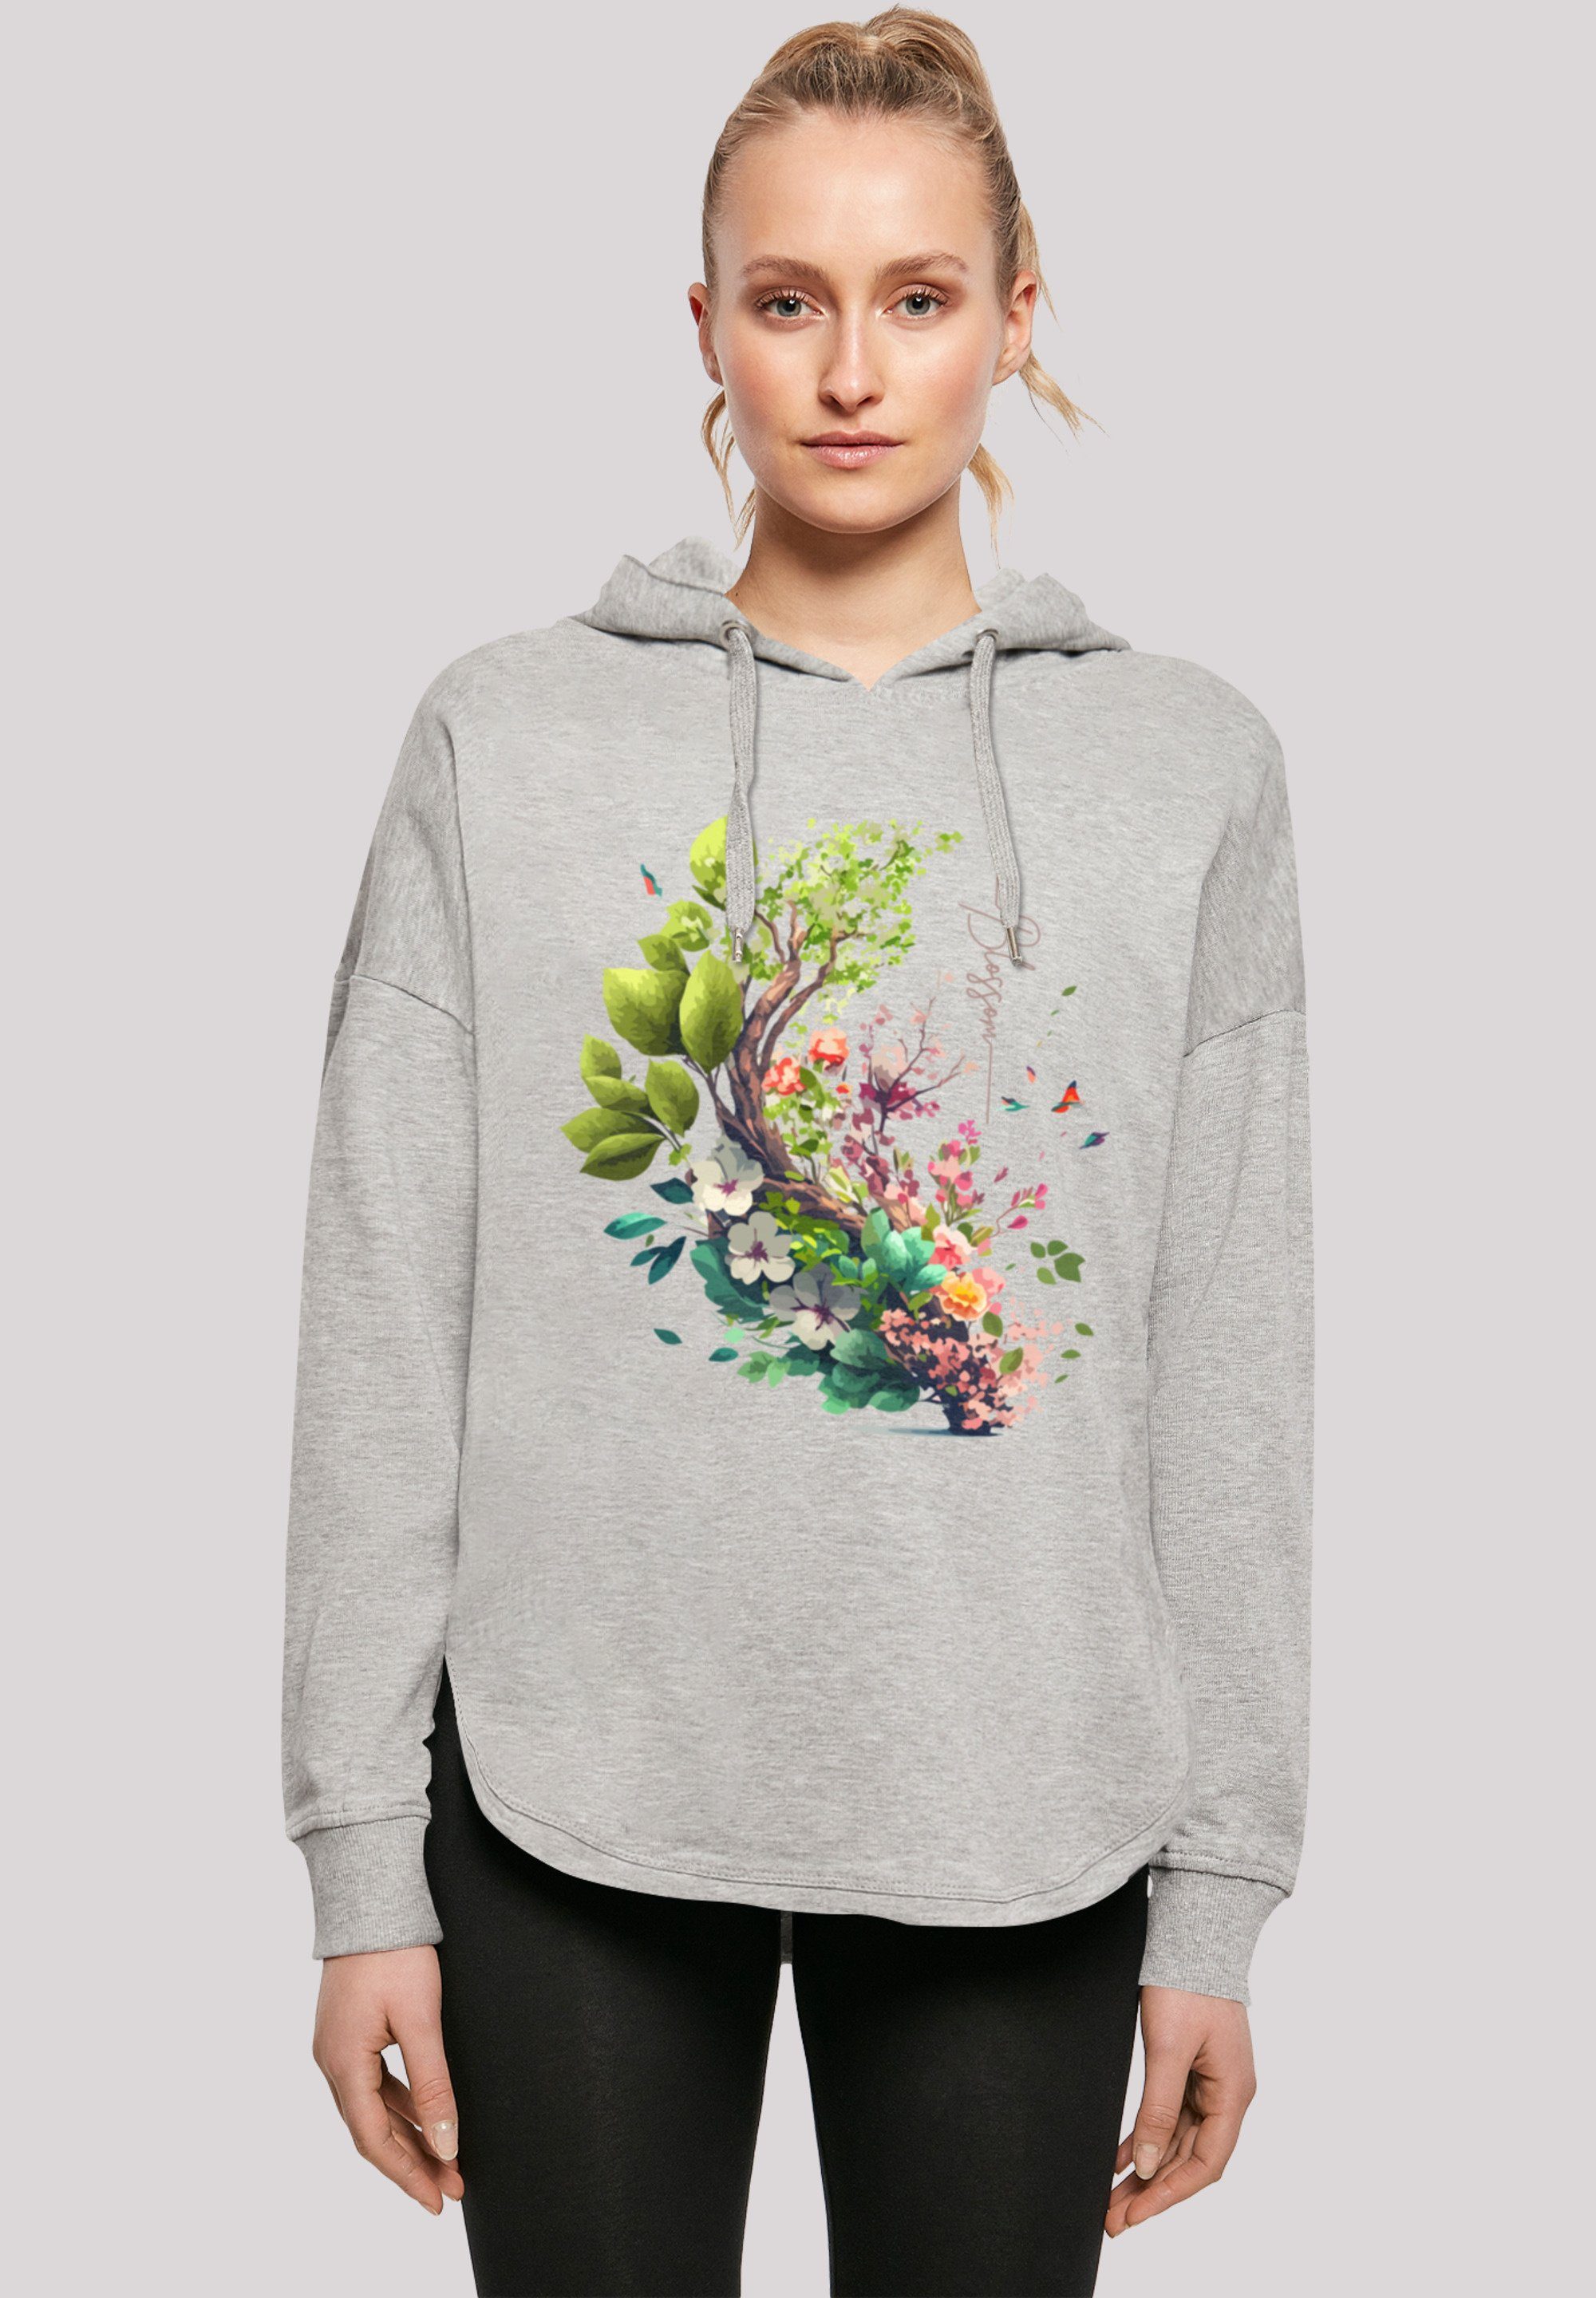 Hoodie Oversize grey F4NT4STIC Baum Blumen Kapuzenpullover mit Print